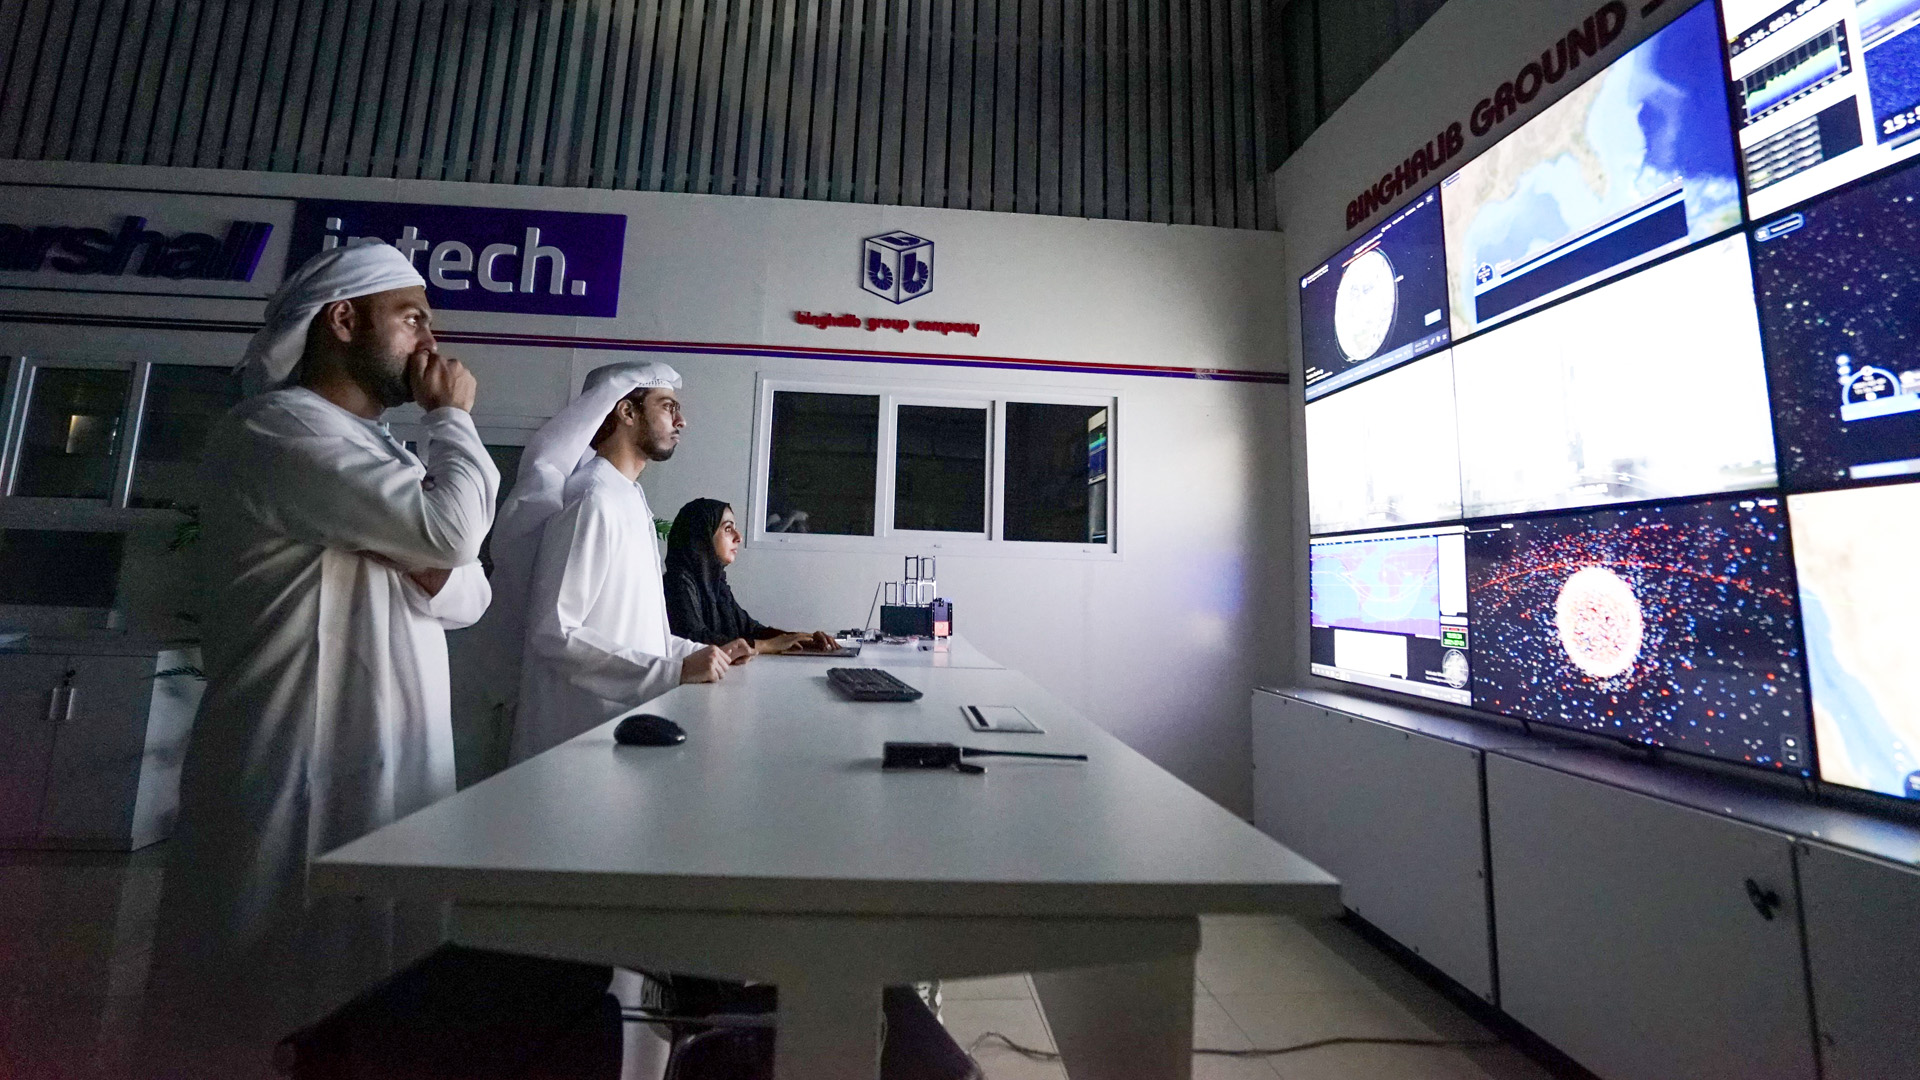 UAE team launches Ghalib satellite to track wildlife in the UAE